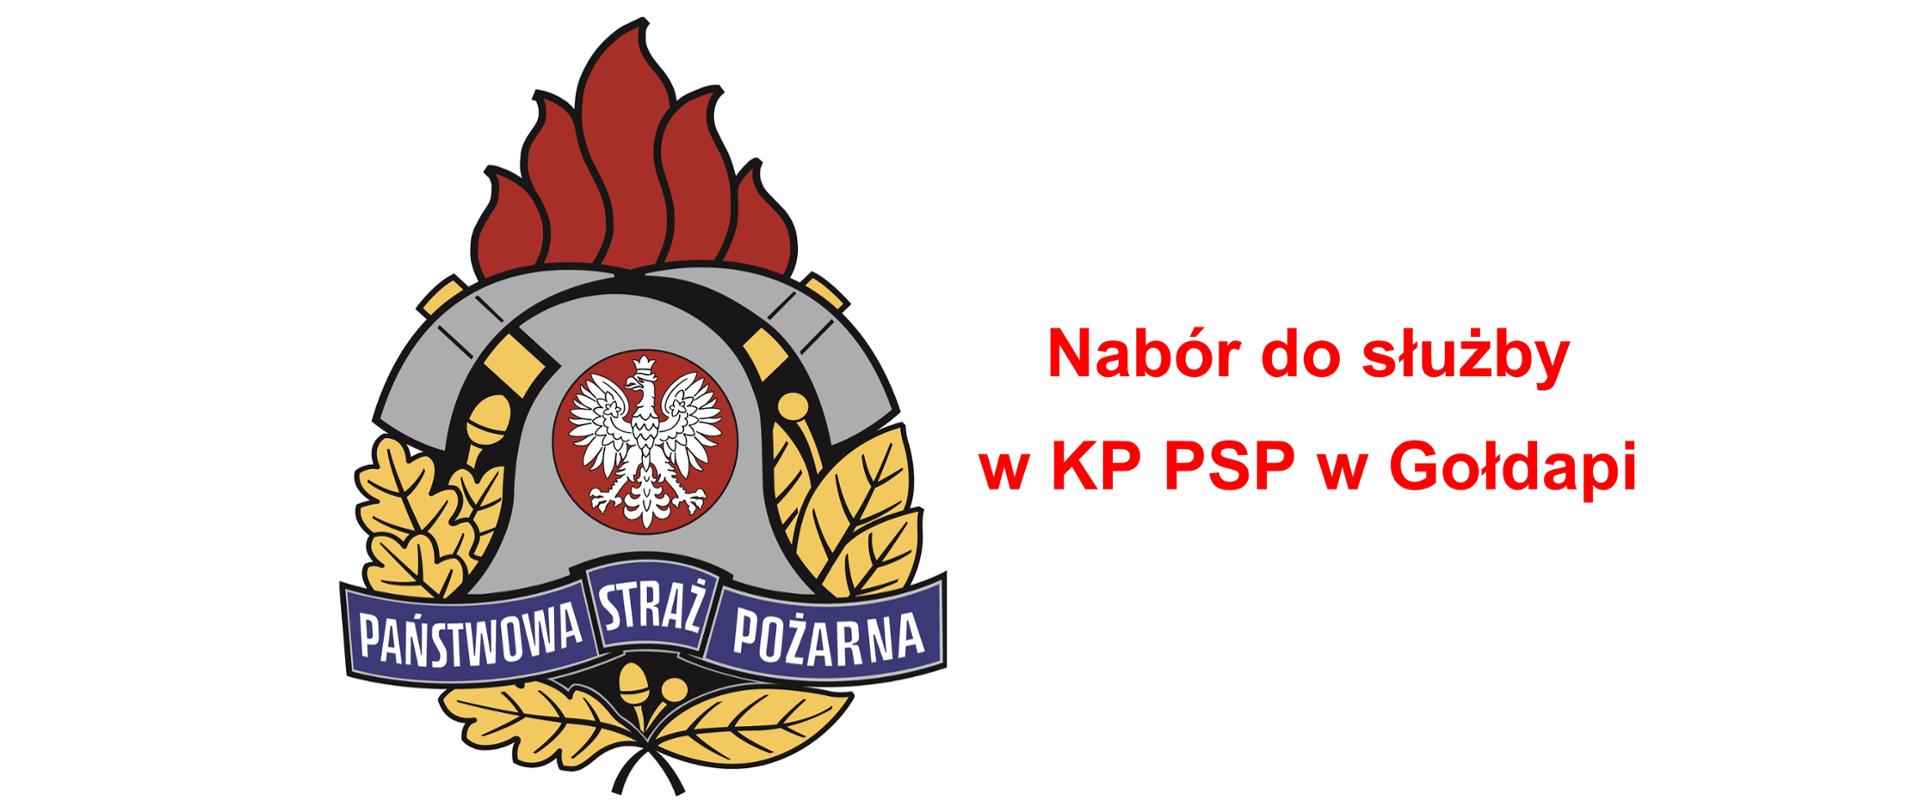 Obraz przedstawia po lewej stronie logo Państwowej Straży Pożarnej, a po prawej napis "Nabór do służby w KP PSP w Gołdapi"